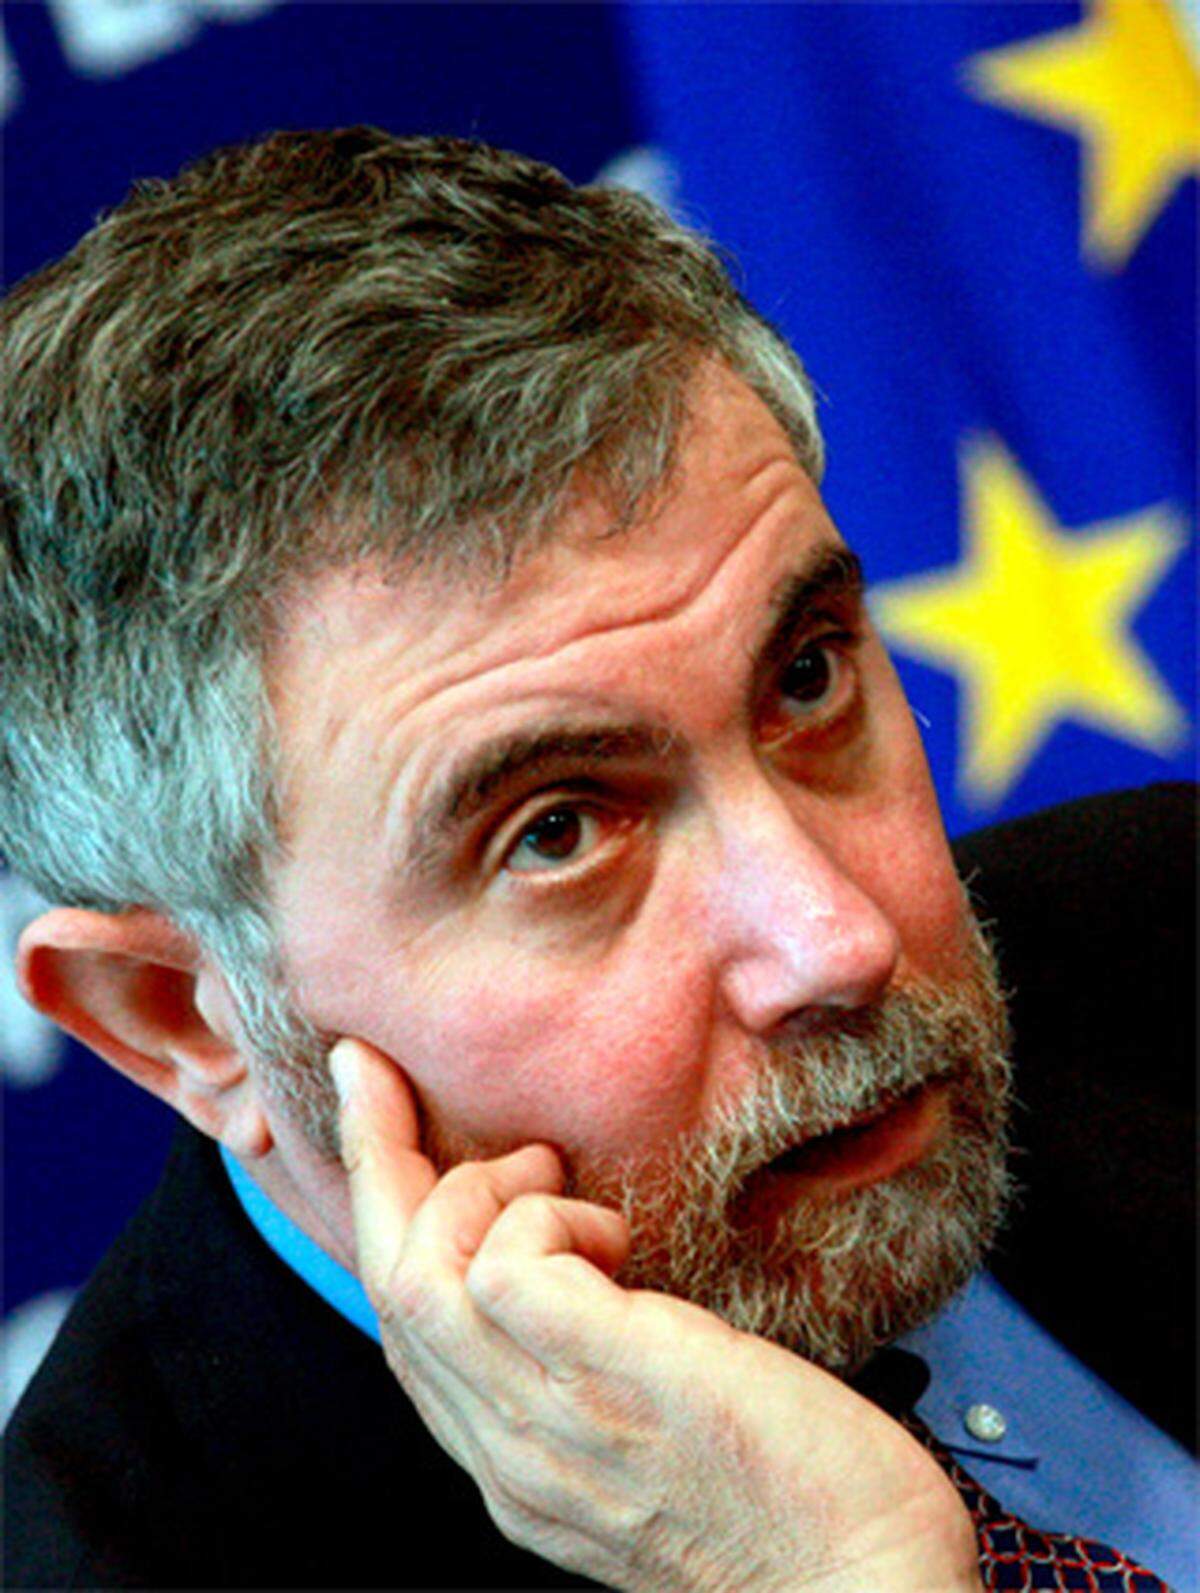 Die Finanzkrise hat die Volkswirtschaftslehre auf den Kopf gestellt. Der US-amerikanische Wirtschafts-Nobelpreisträger Paul Krugman geht daher mit seiner Zunft wenig gnädig ins Gericht:Von der Makroökonomie sei in den vergangenen 30 Jahren ein Großteil "bestenfalls spektakulär nutzlos, schlimmstenfalls schädlich" gewesen.